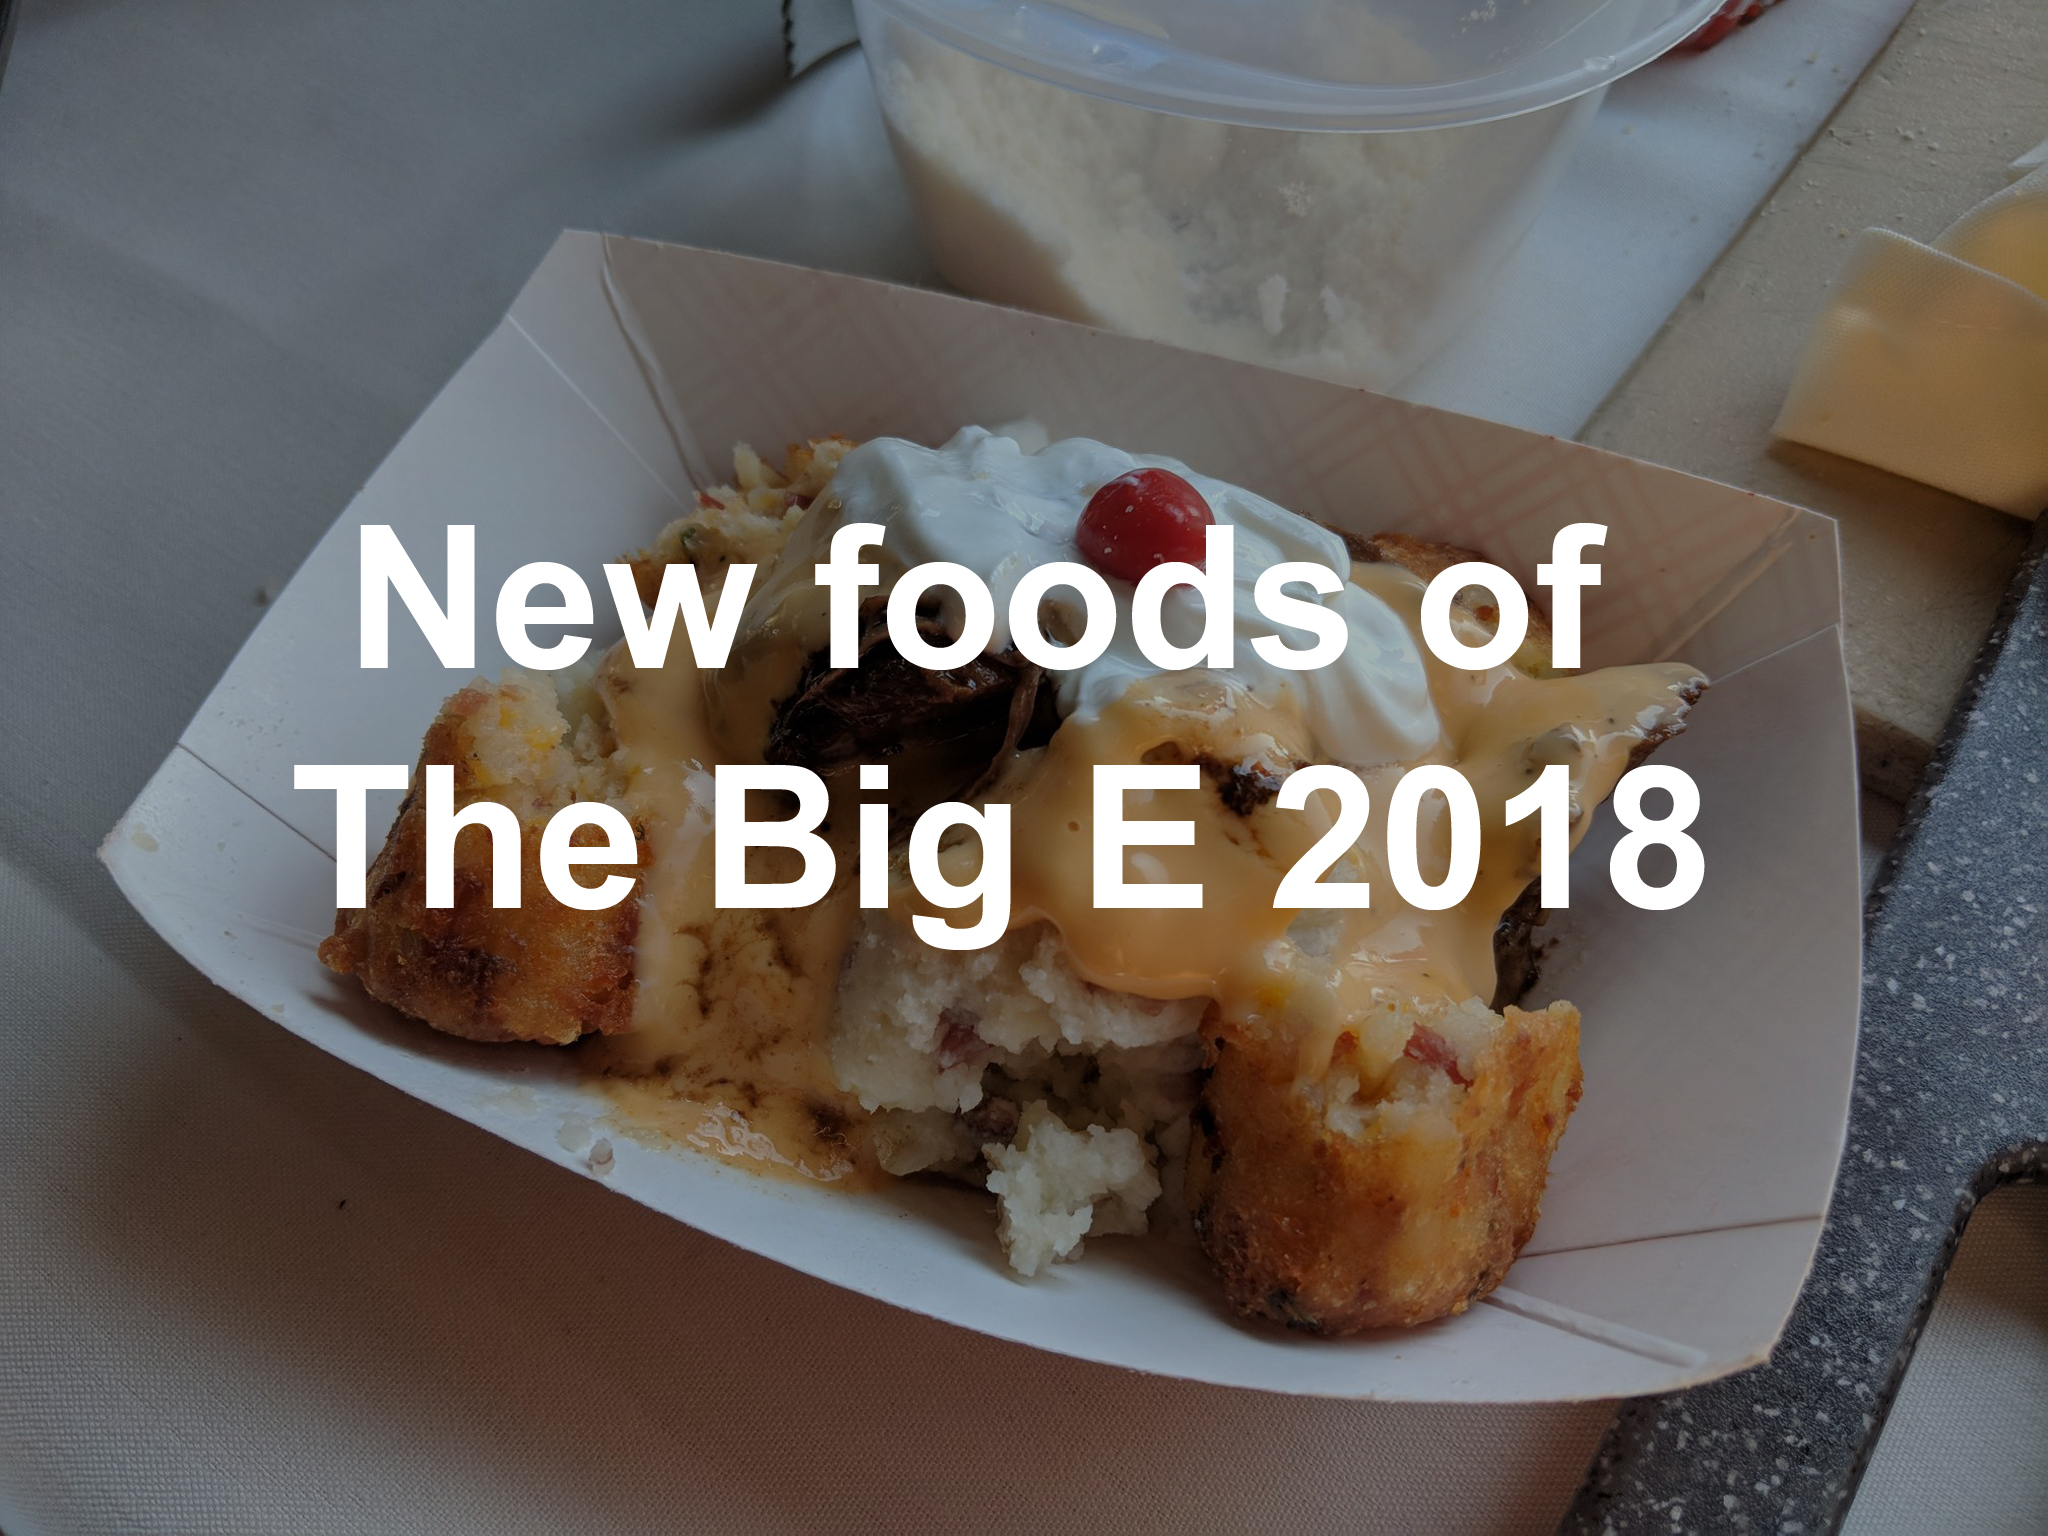 Big E reveals new foods for 2018